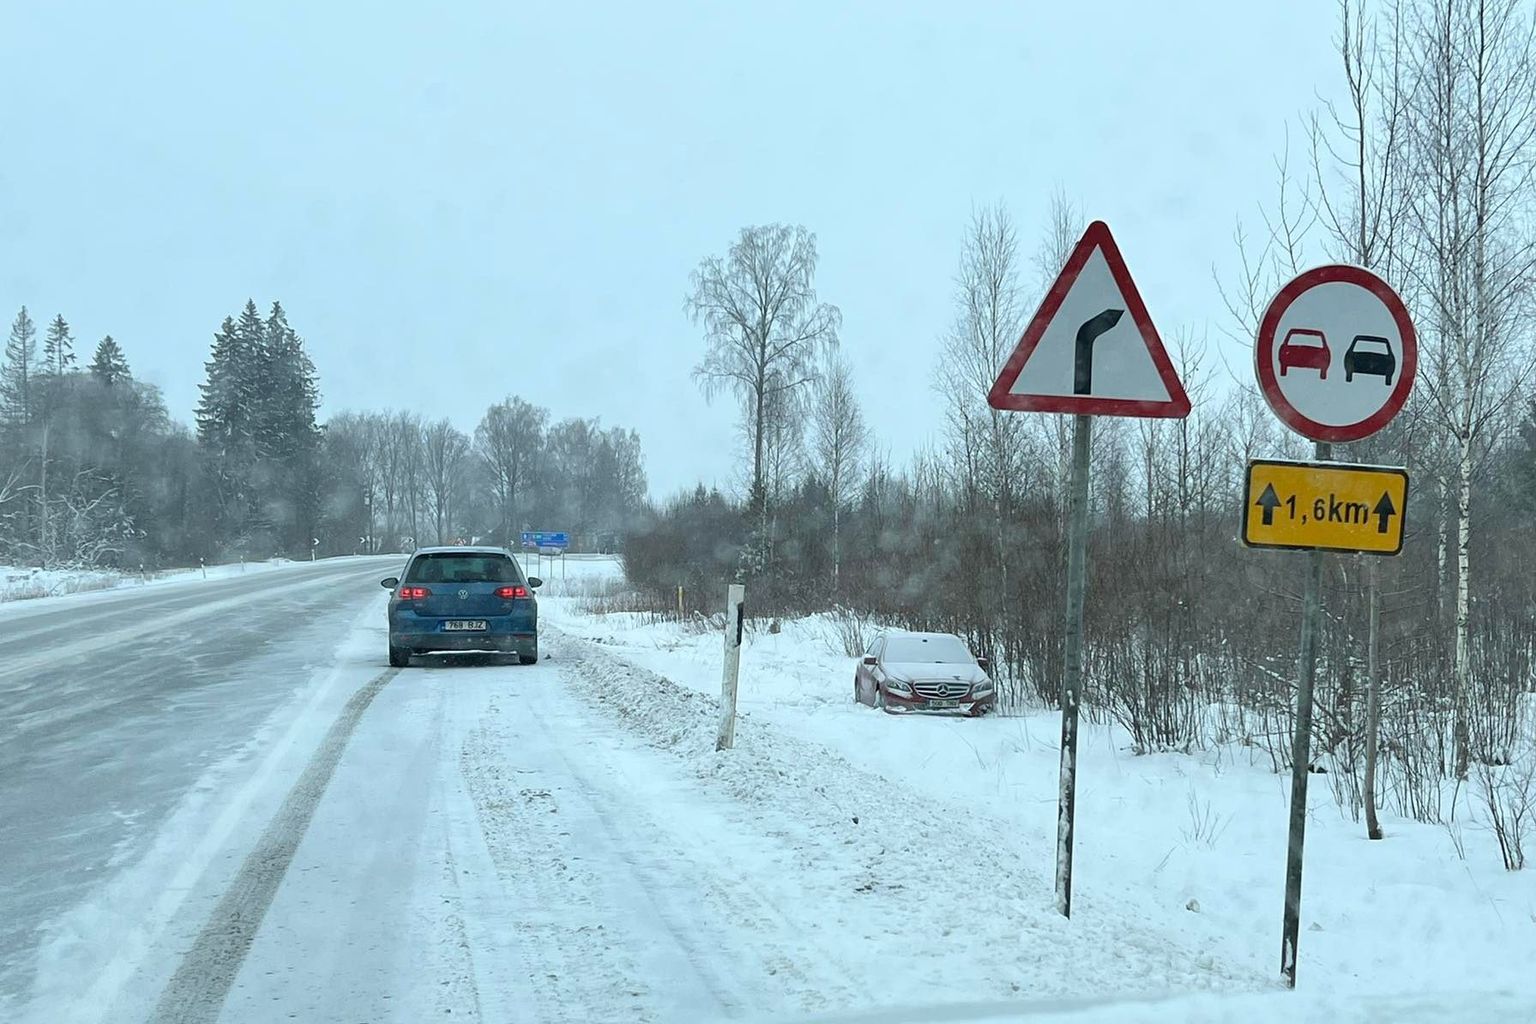 Liiklejate tähelepanu köitis Otikul maanteekraavis lund katusele koguv sõiduauto.